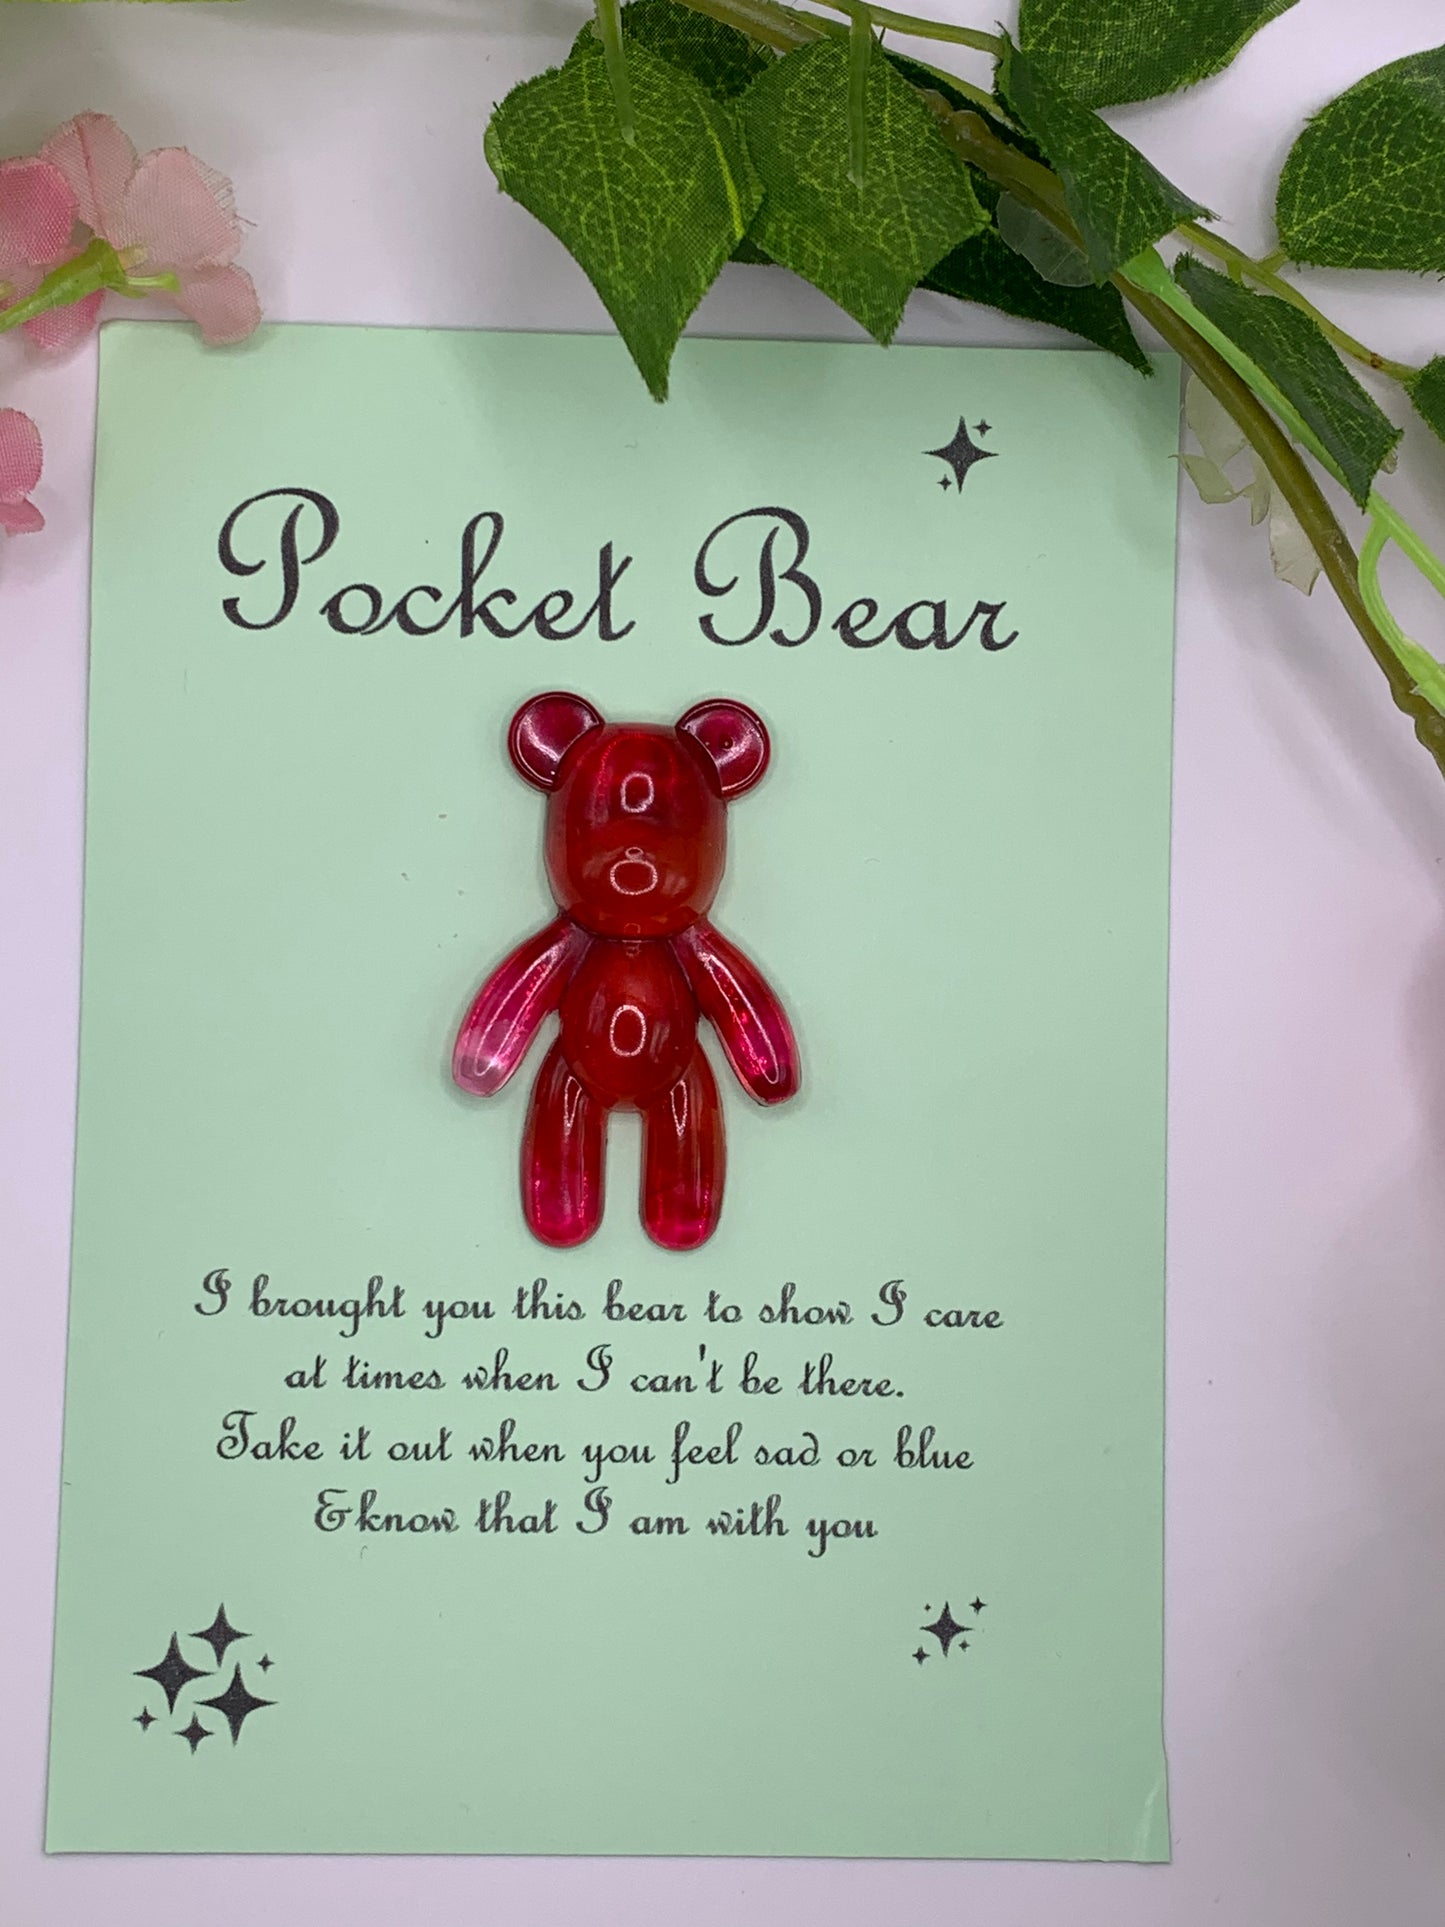 Pocket Bears